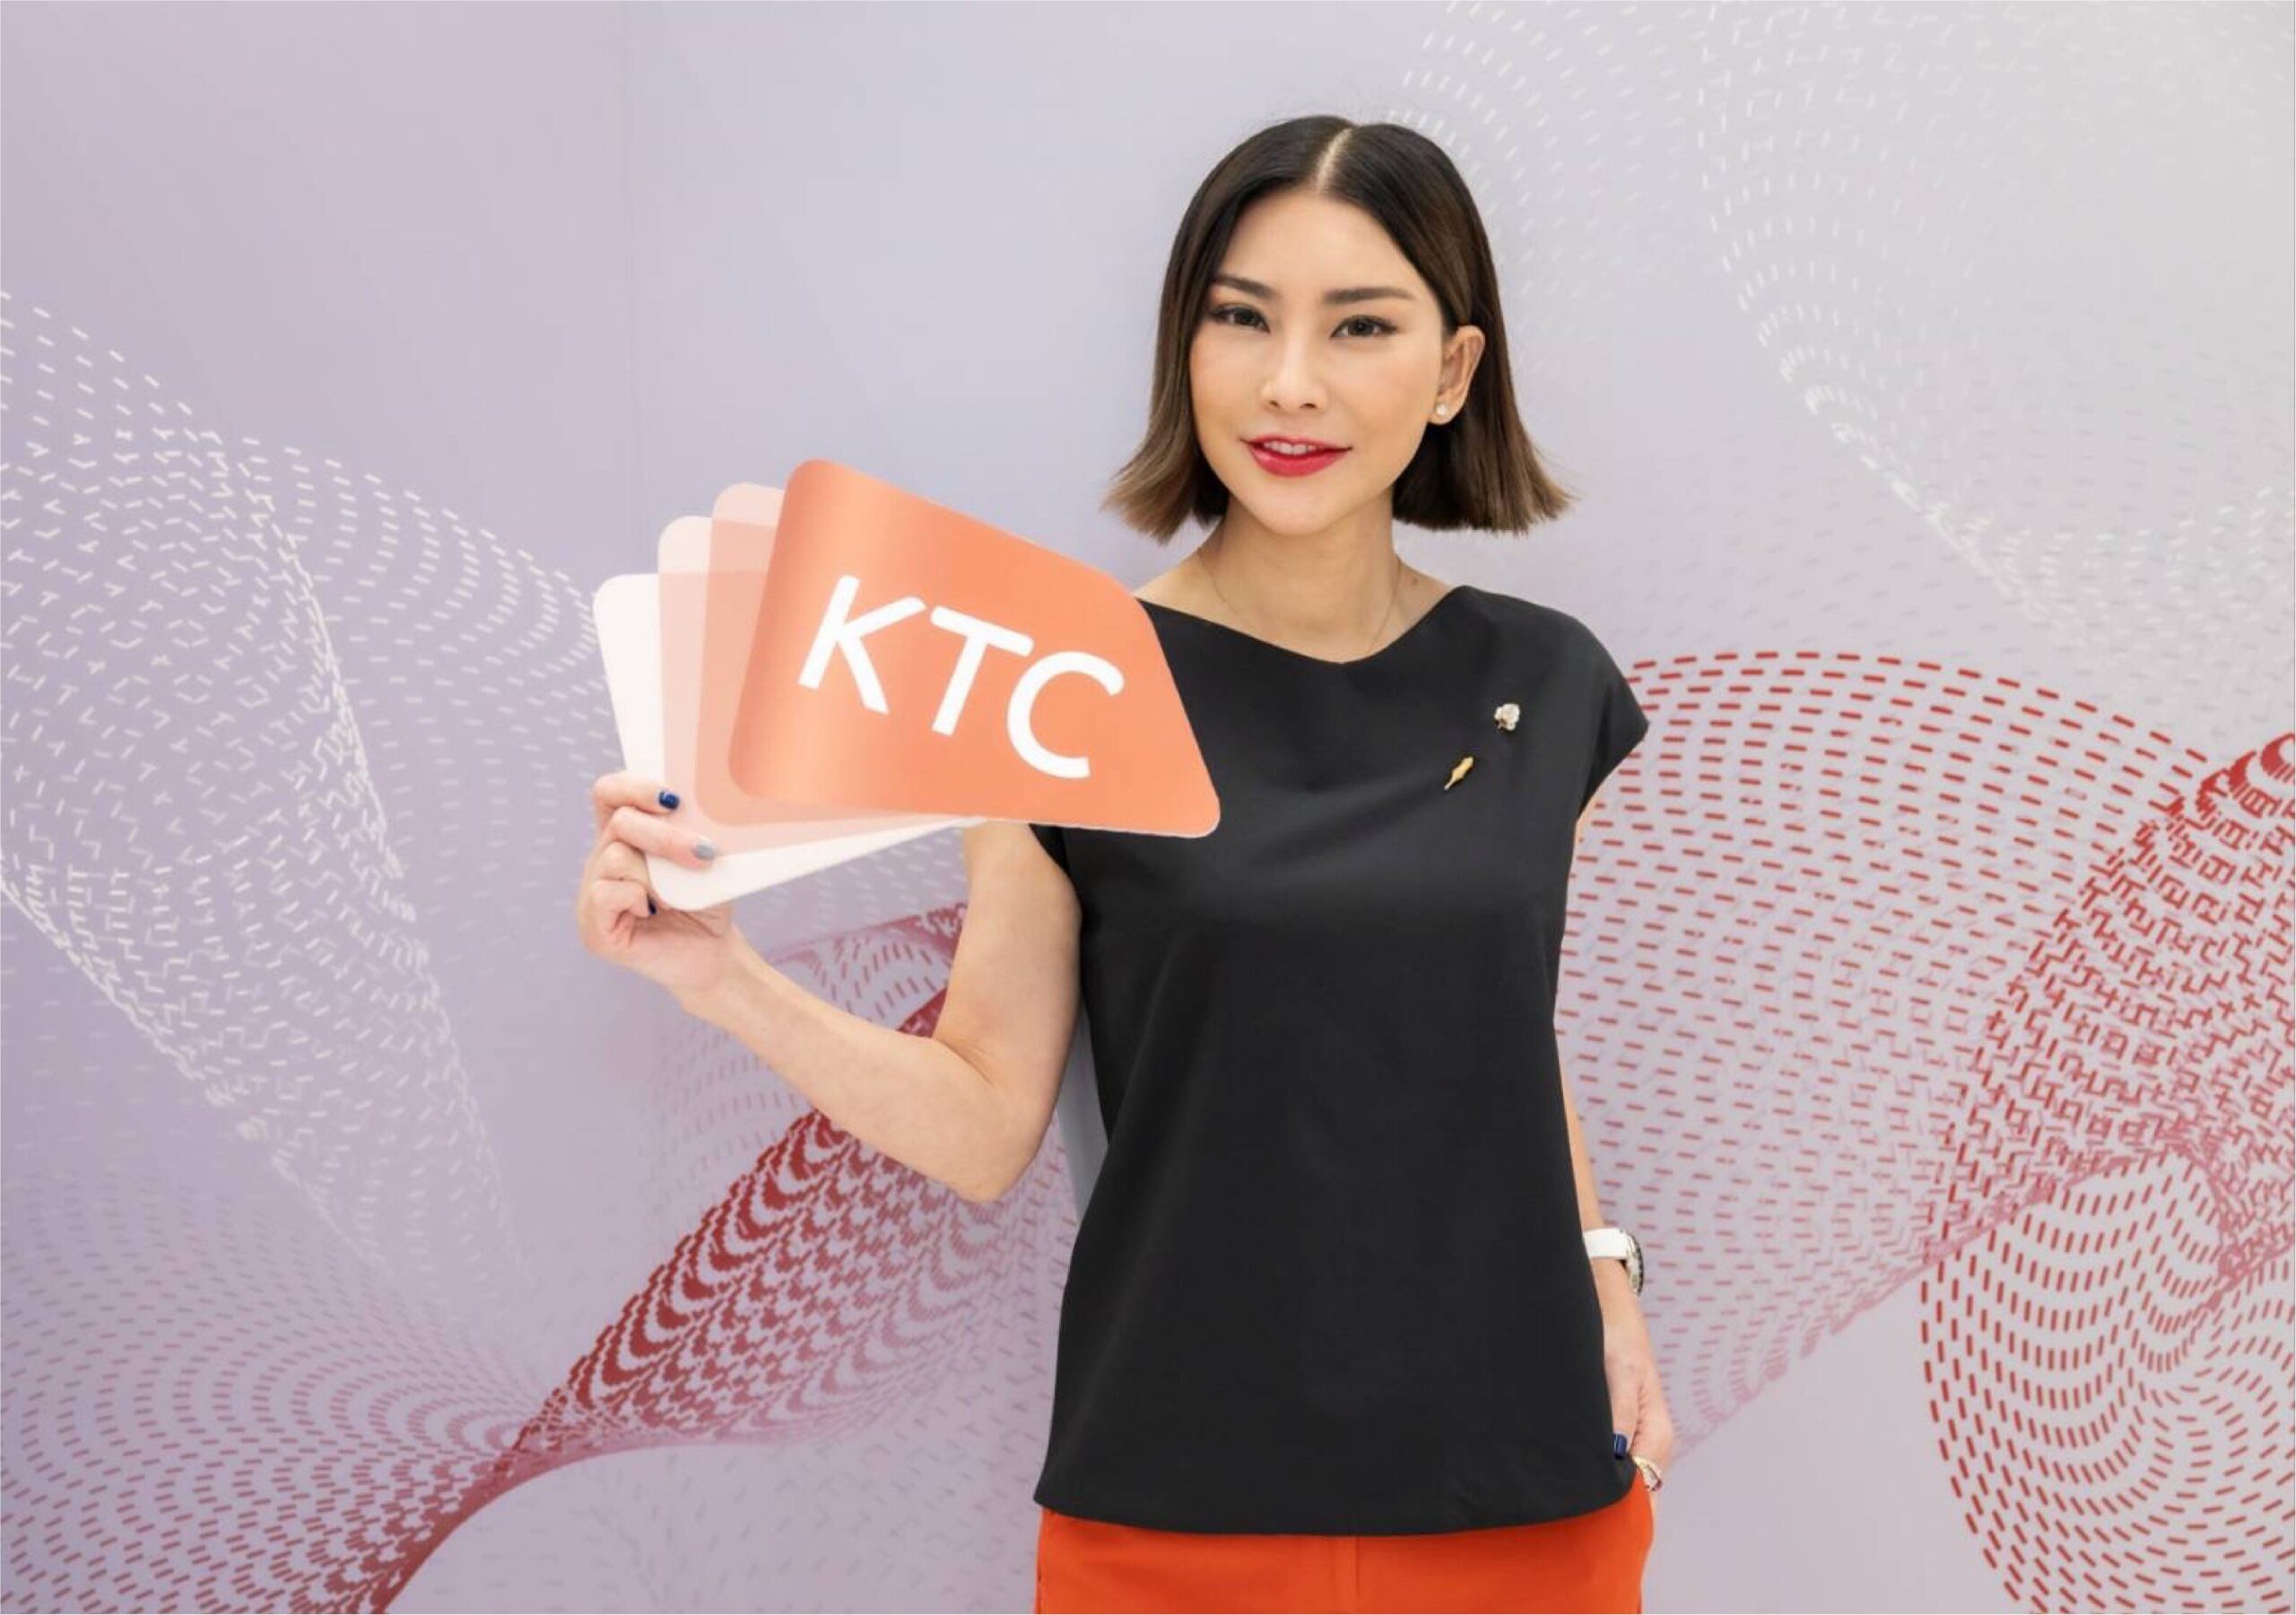 นางสาวปริม ปัญญาเสรีพร ผู้บริหารสูงสุดฝ่ายการตลาดบัตรเครดิต “เคทีซี” หรือ บริษัท บัตรกรุงไทย จำกัด (มหาชน)